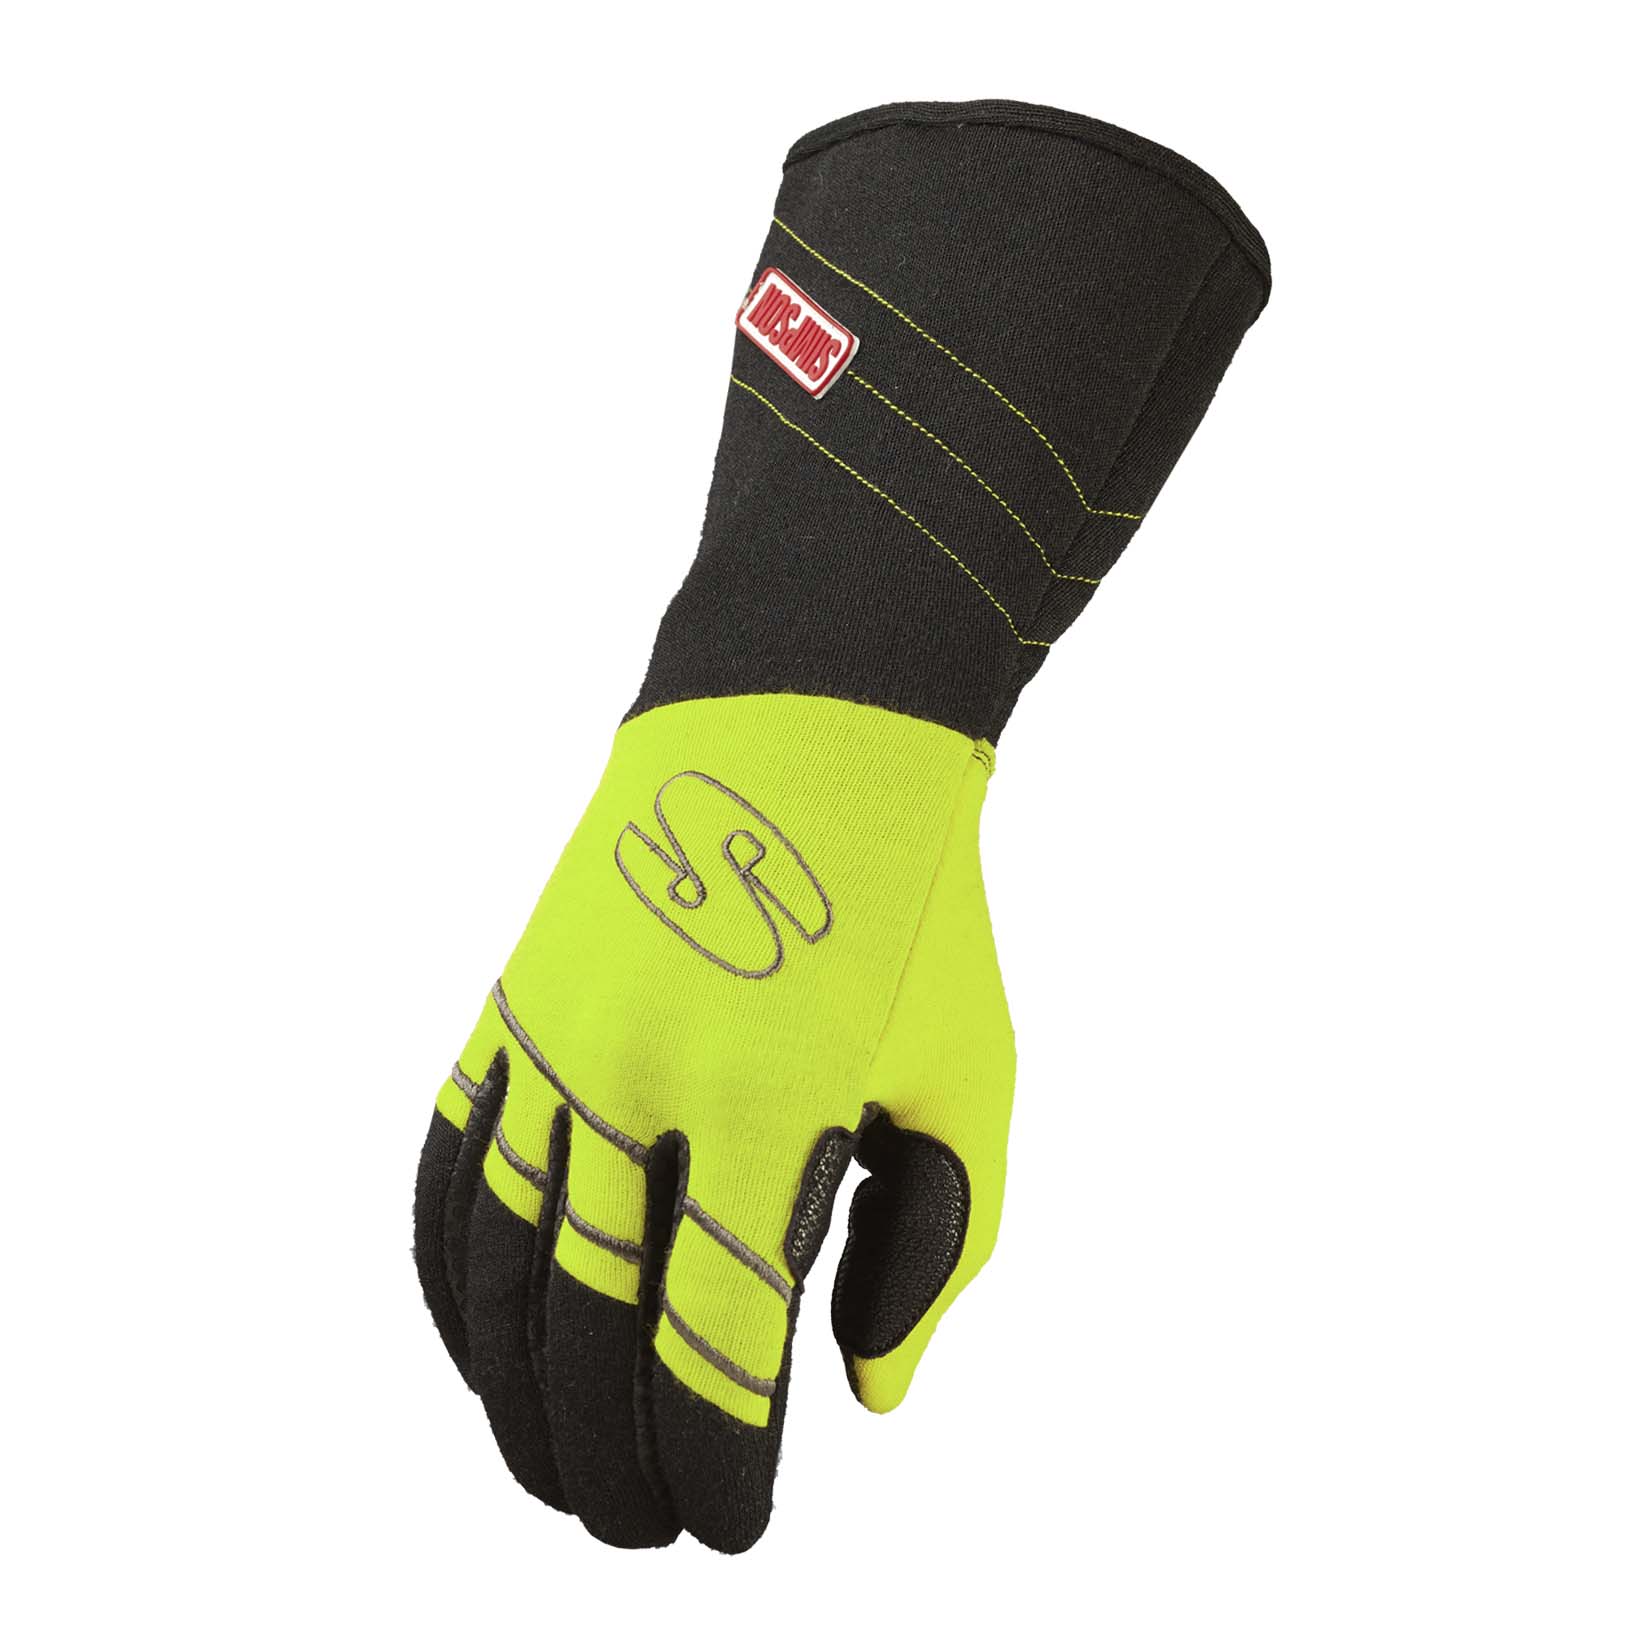 Simpson Hi-Vis Racing Gloves